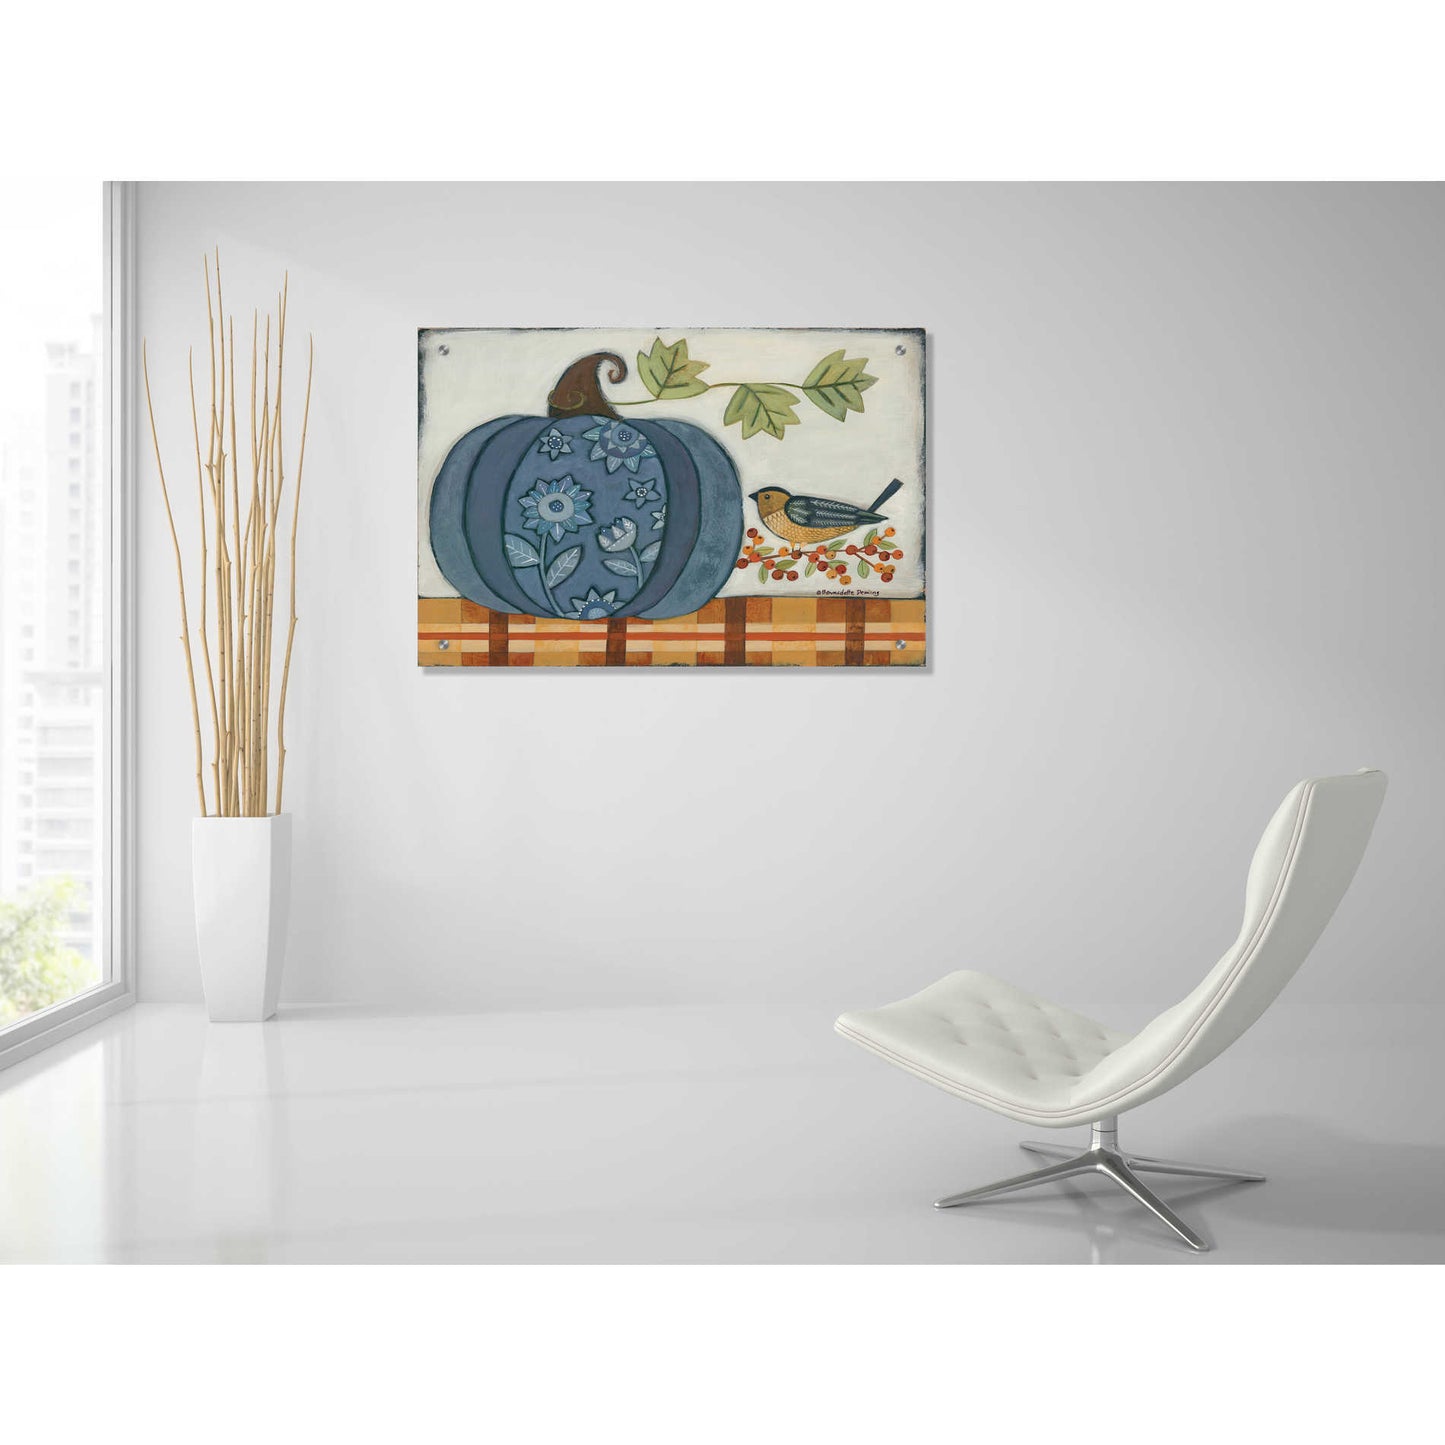 Epic Art "Blue Patterned Pumpkin" by Bernadette Deming, Acrylic Glass Wall Art,36x24